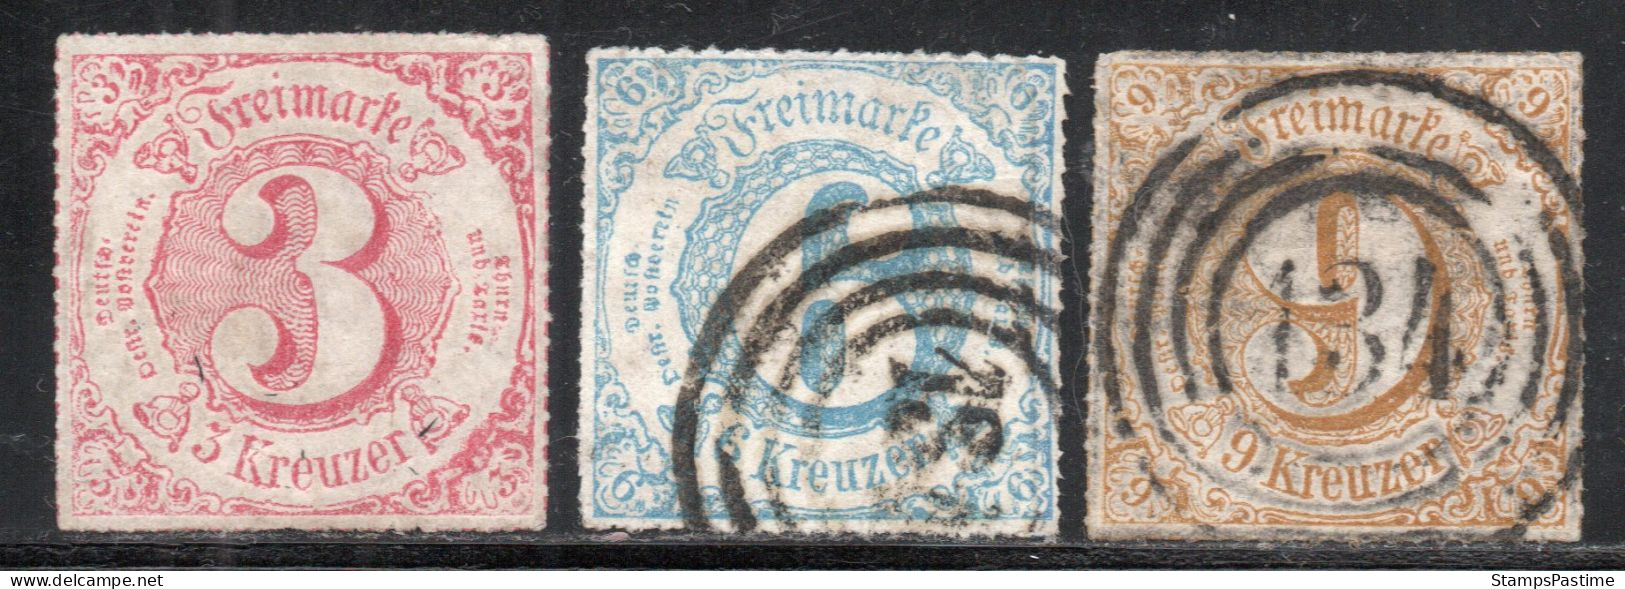 ALEMANIA – THURN Y TAXIS SUR Serie No Completa X 3 Sellos Usados CIFRAS Año 1865 – Valorizada En Catálogo € 89,00 - Used